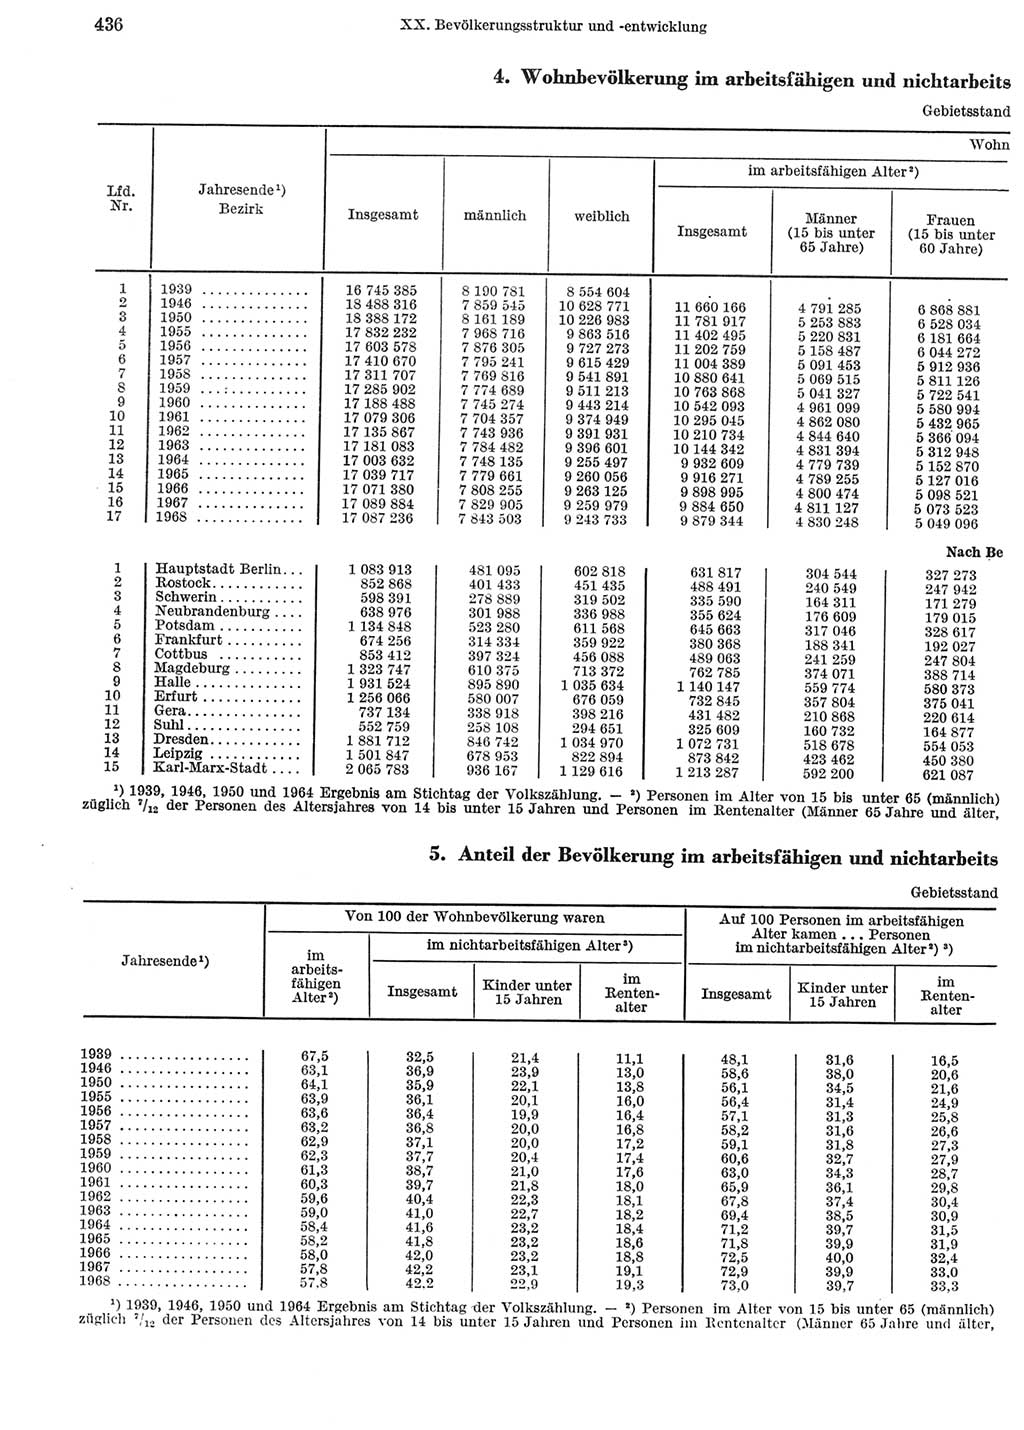 Statistisches Jahrbuch der Deutschen Demokratischen Republik (DDR) 1969, Seite 436 (Stat. Jb. DDR 1969, S. 436)